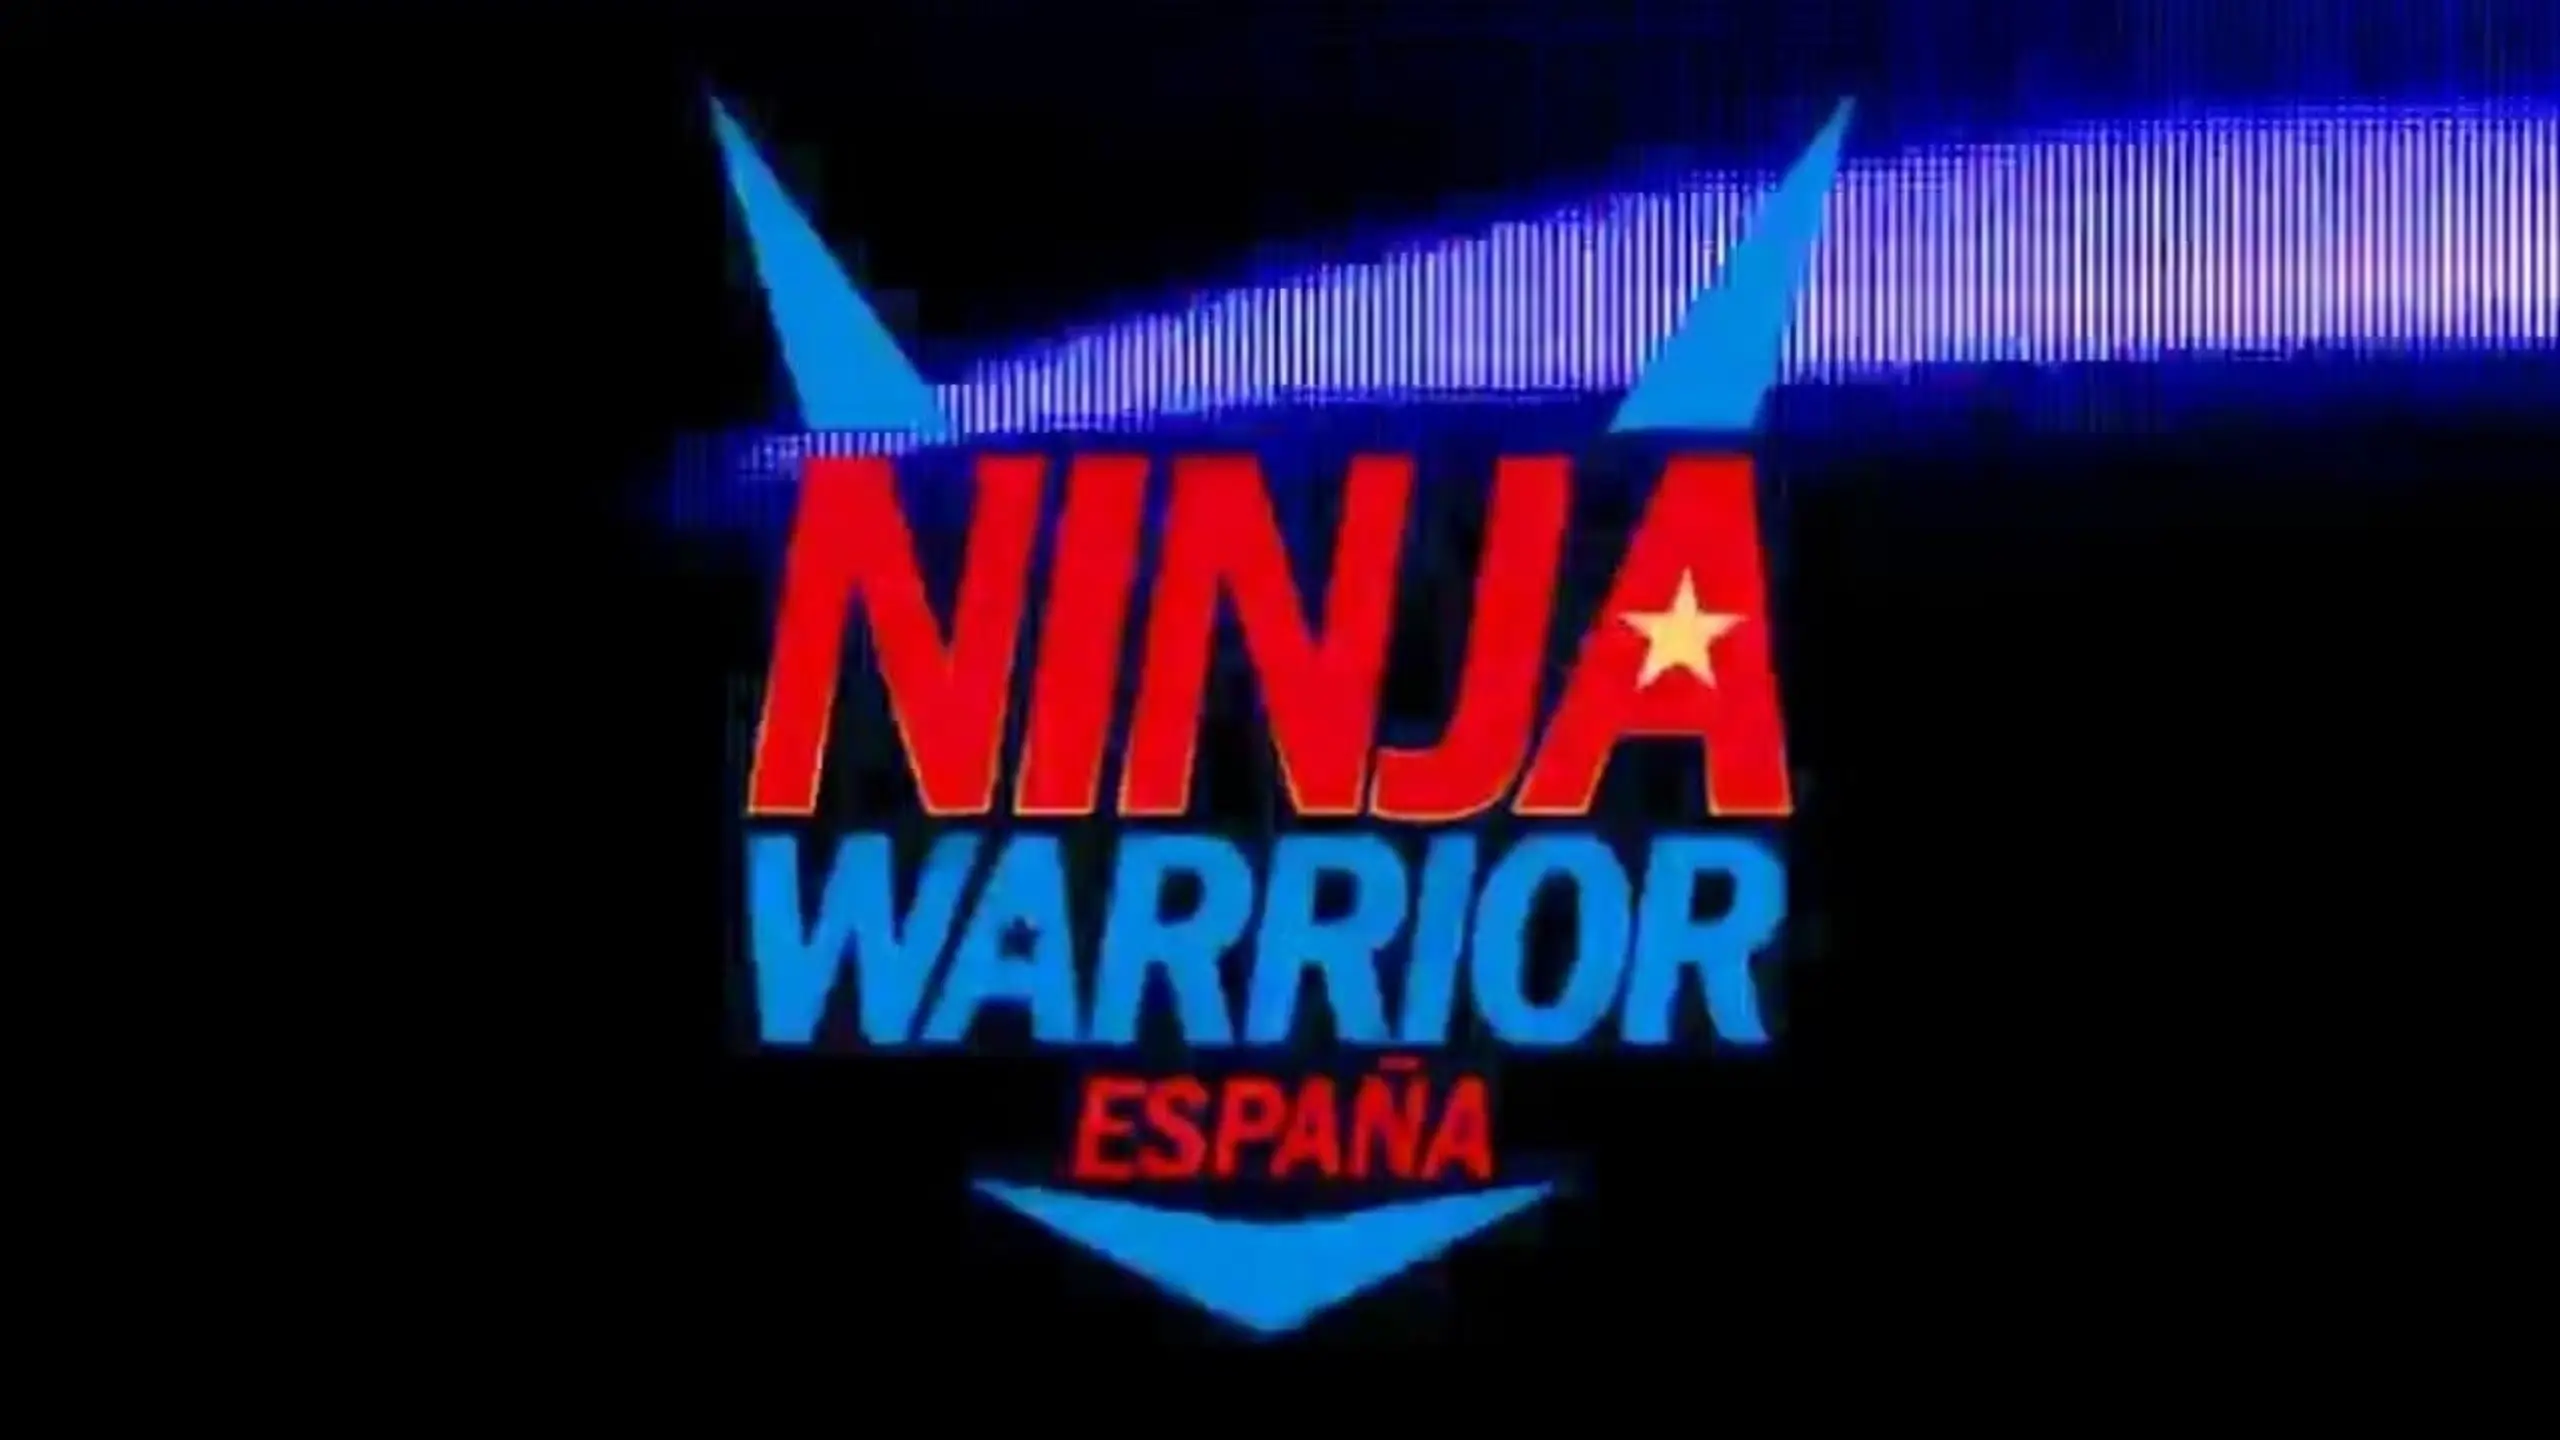 Ninja Warrior España